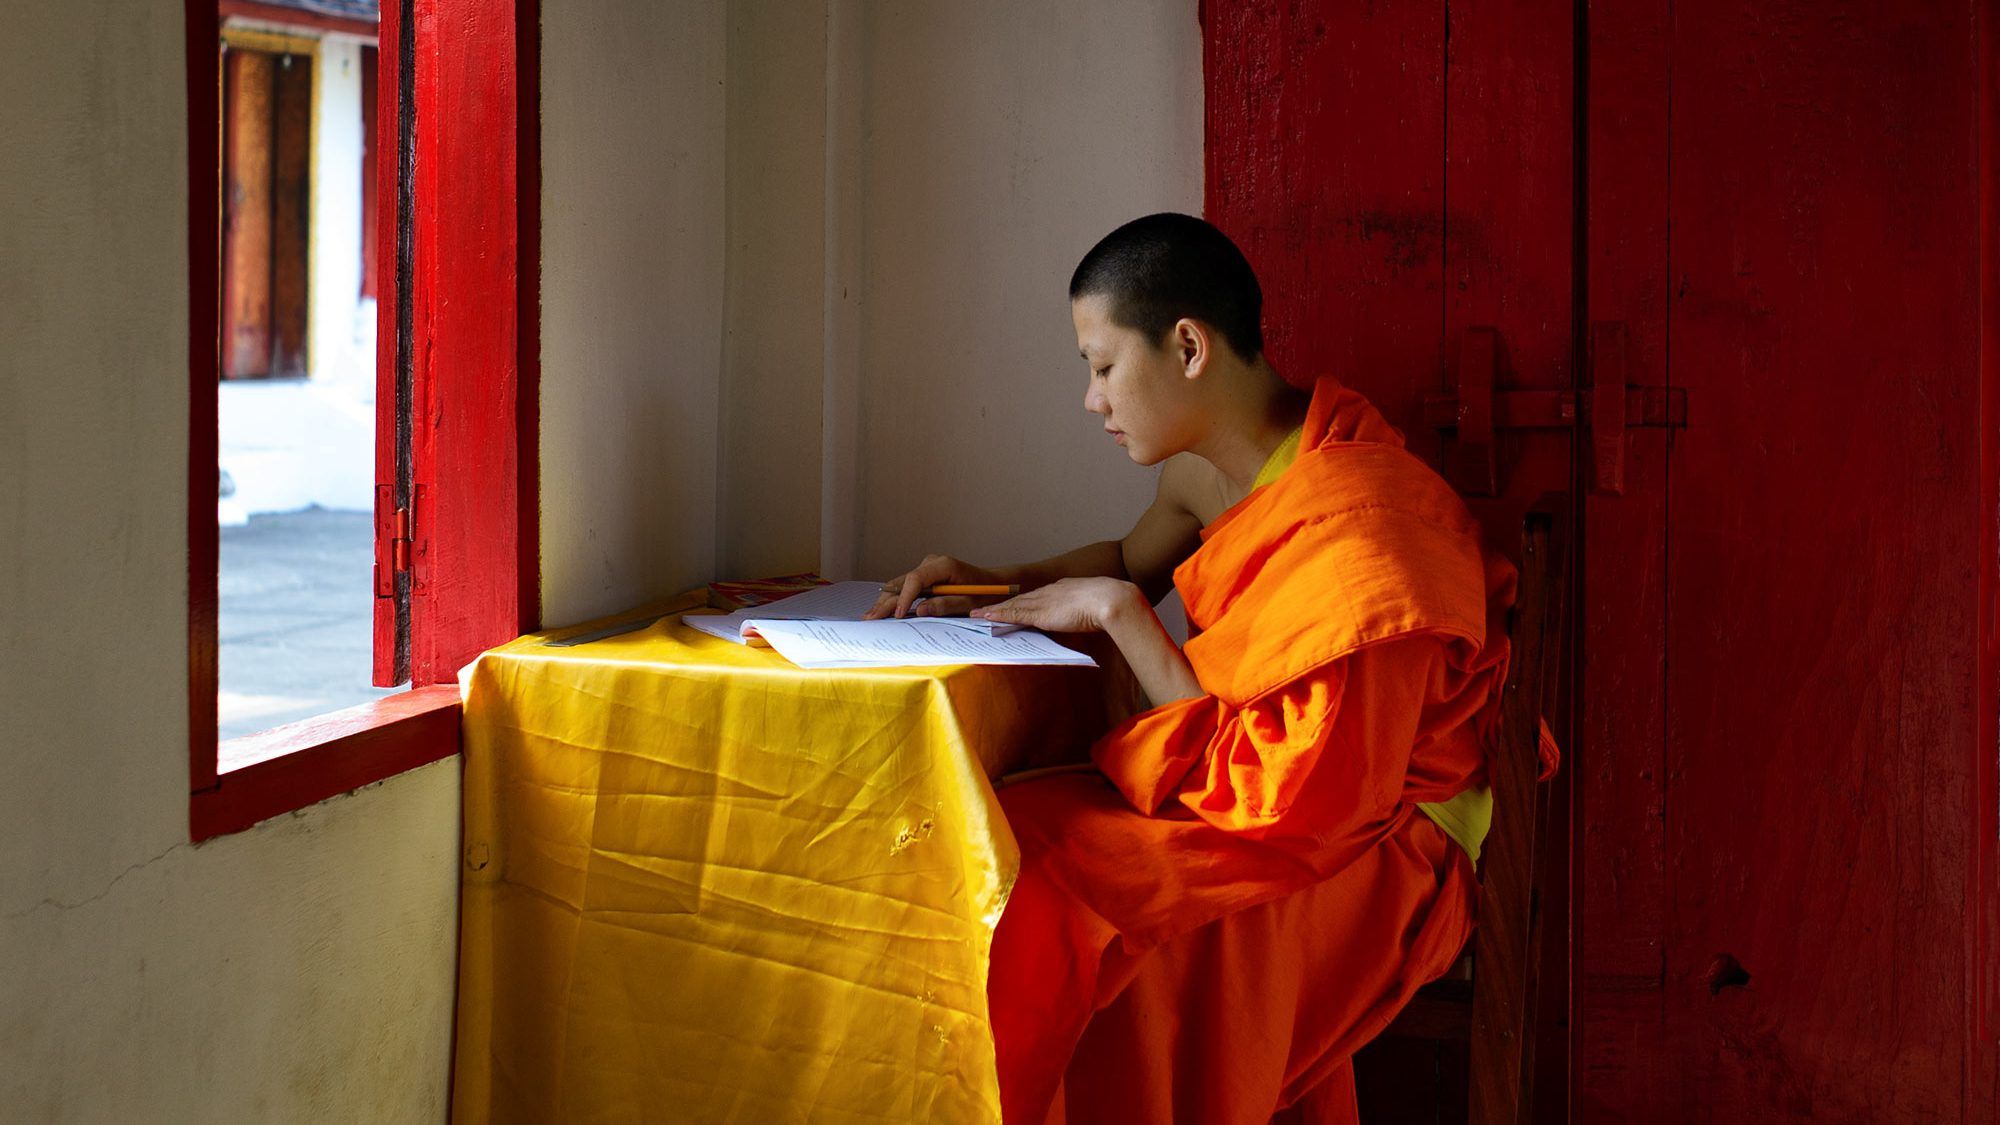 Mönch beim Studium